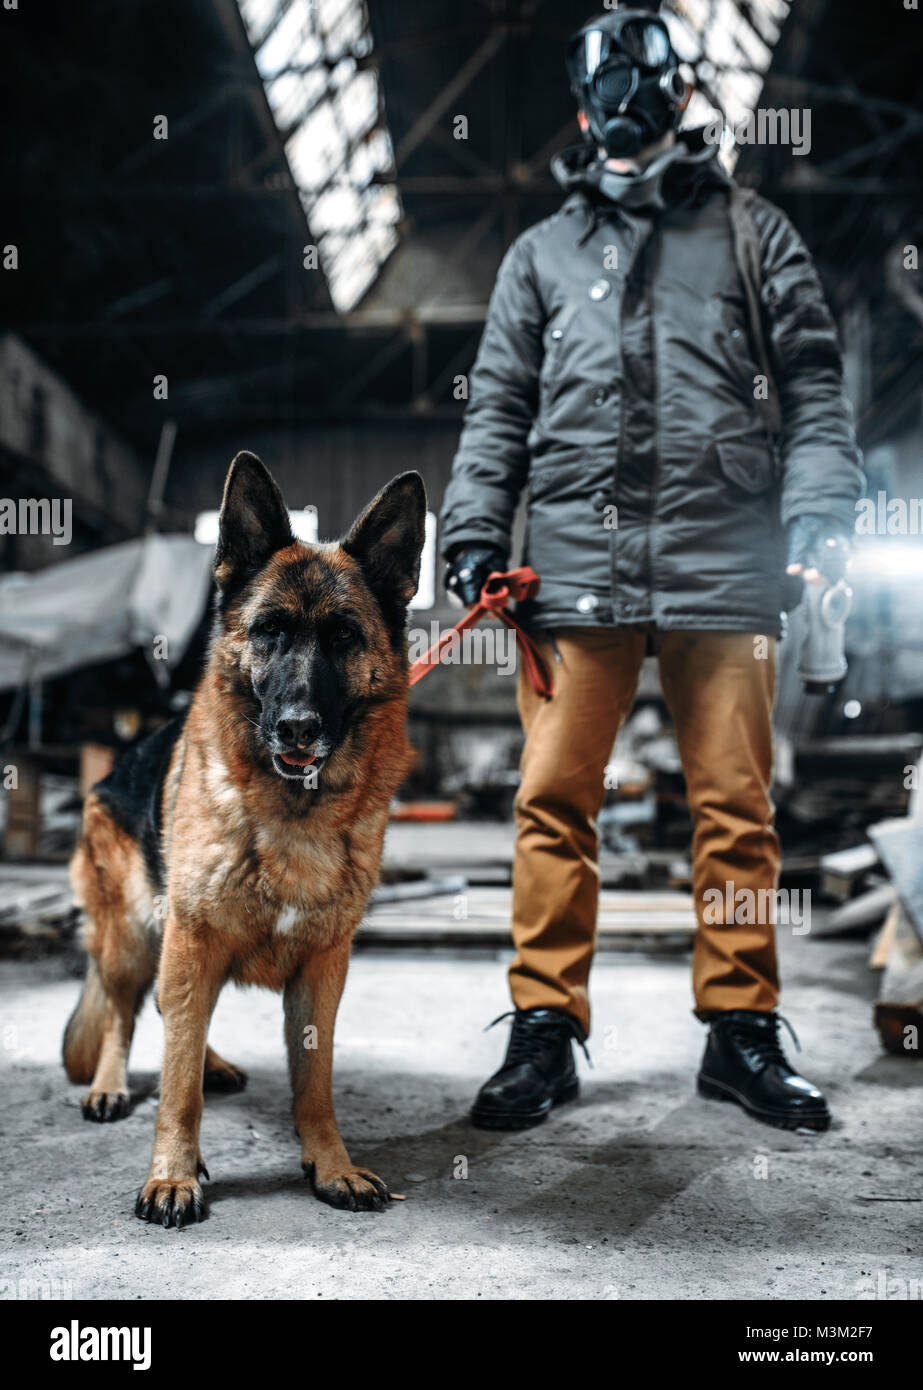 Stalker Soldat in Gasmaske und Hund in radioaktive Zone, Freunde in der post-apokalyptischen Welt. Post-Apokalypse Lifestyle auf Ruinen, Doomsday, der Tag des Gerichts Stockfoto